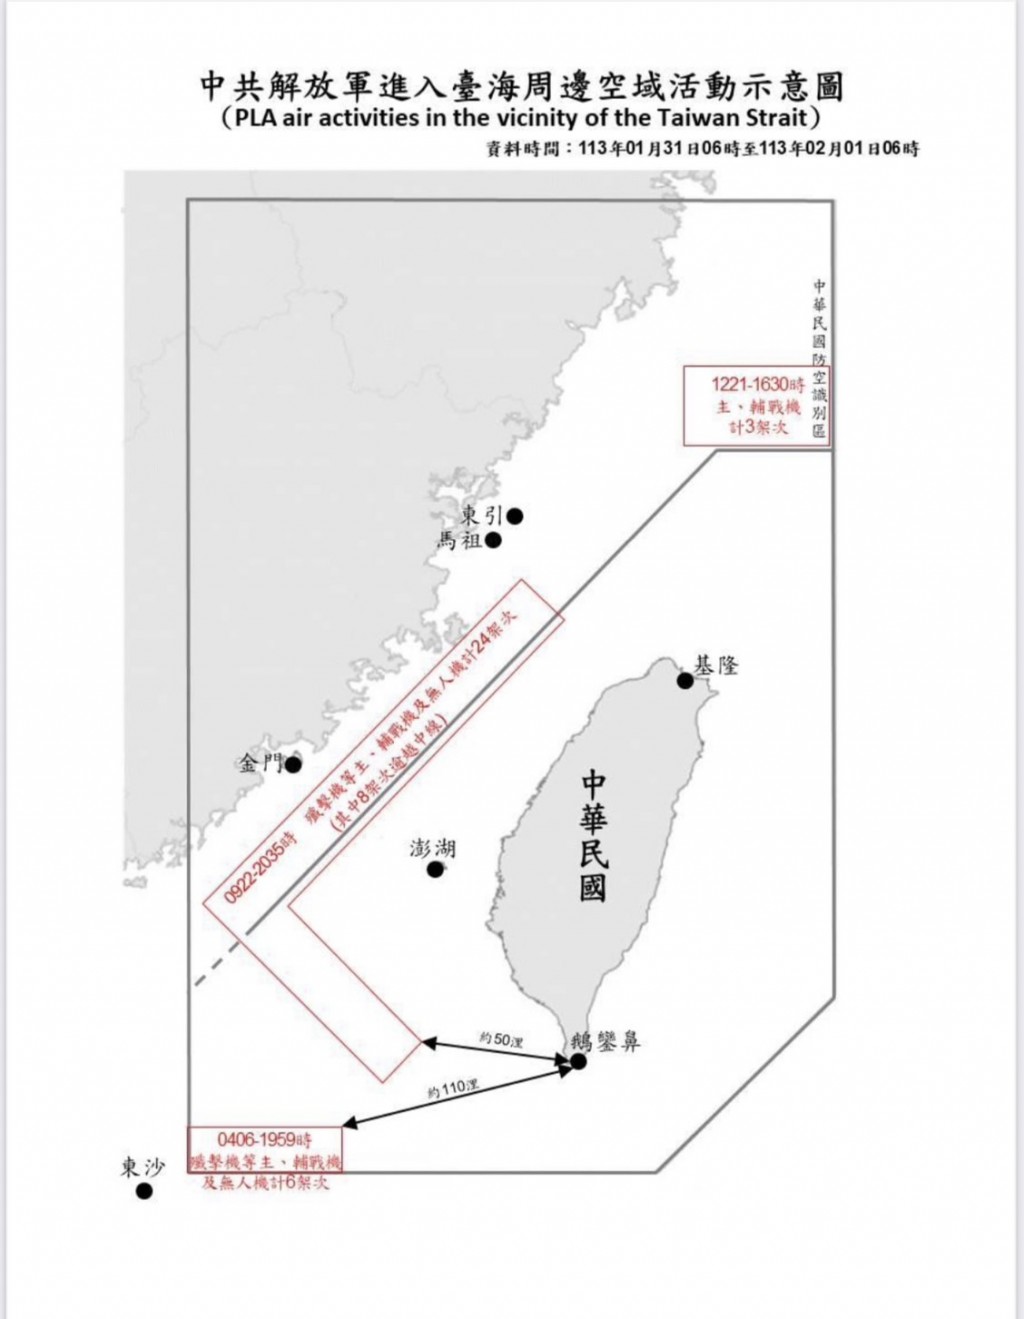 Taiwan tracks 33 Chinese military aircraft, 6 naval ships